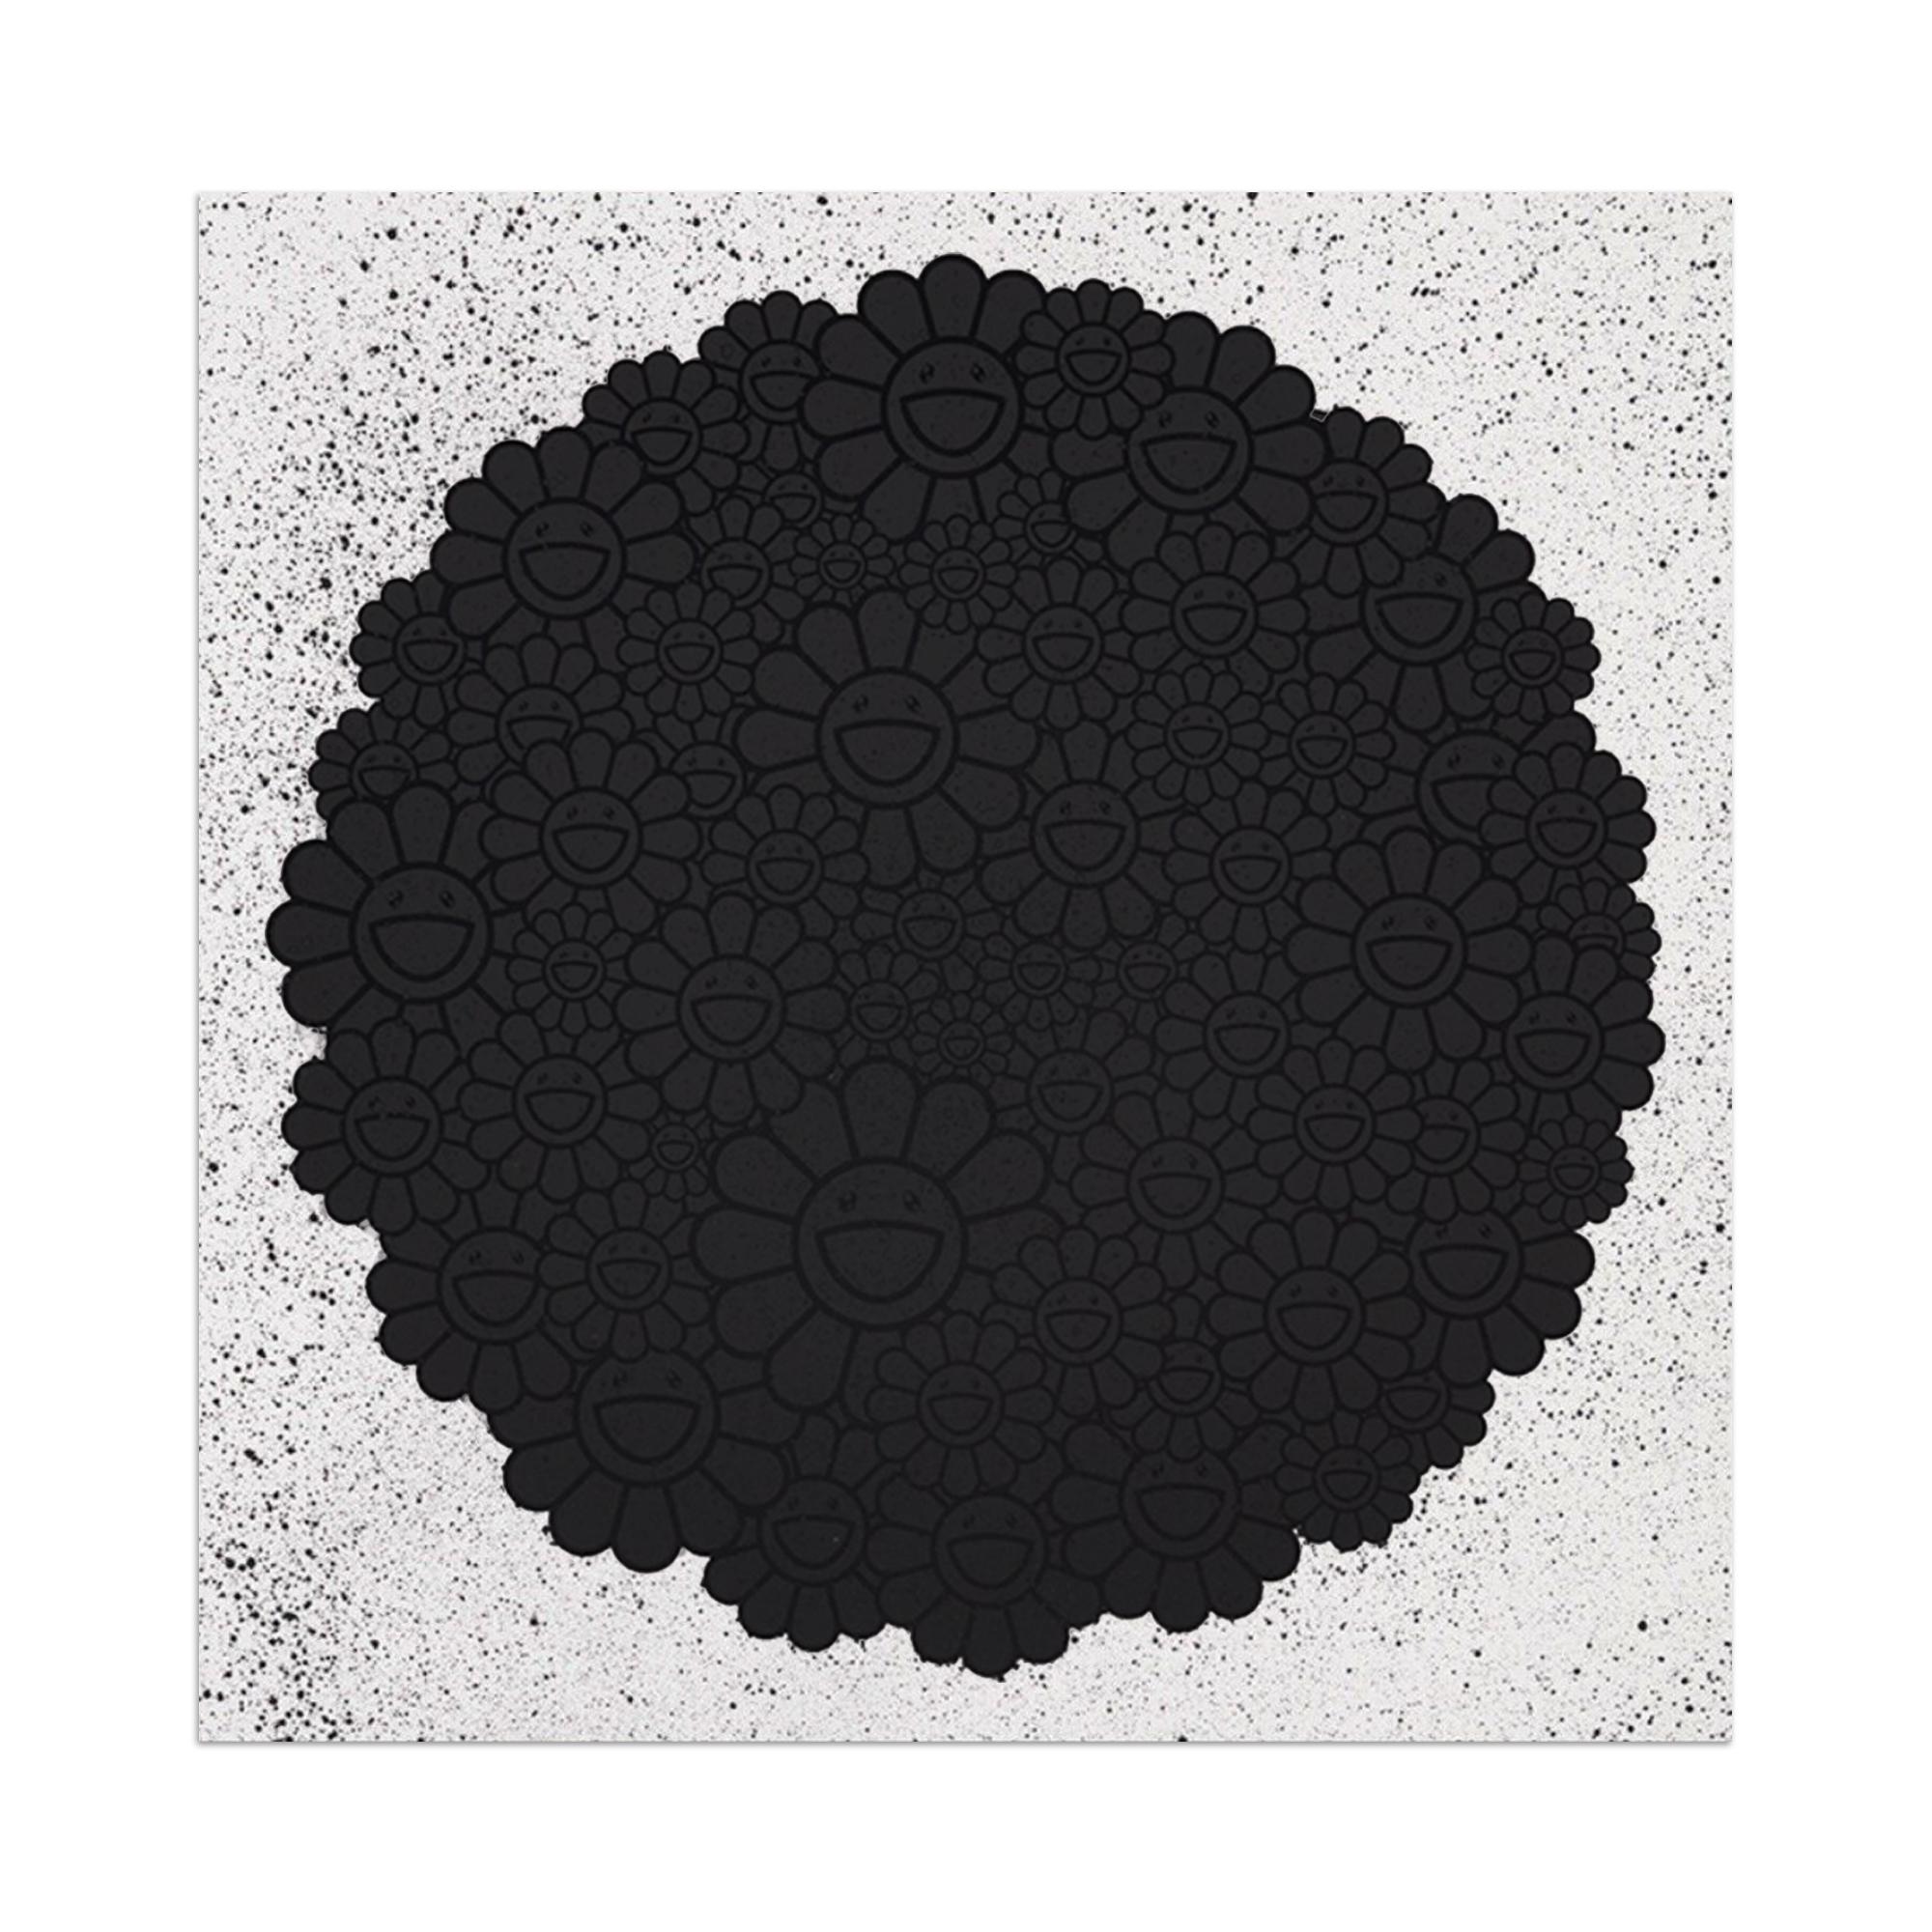 Takashi Murakami Abstract Print - Black Flowers Round (from TM/KK for BLM), Pop Art, Japanese Art